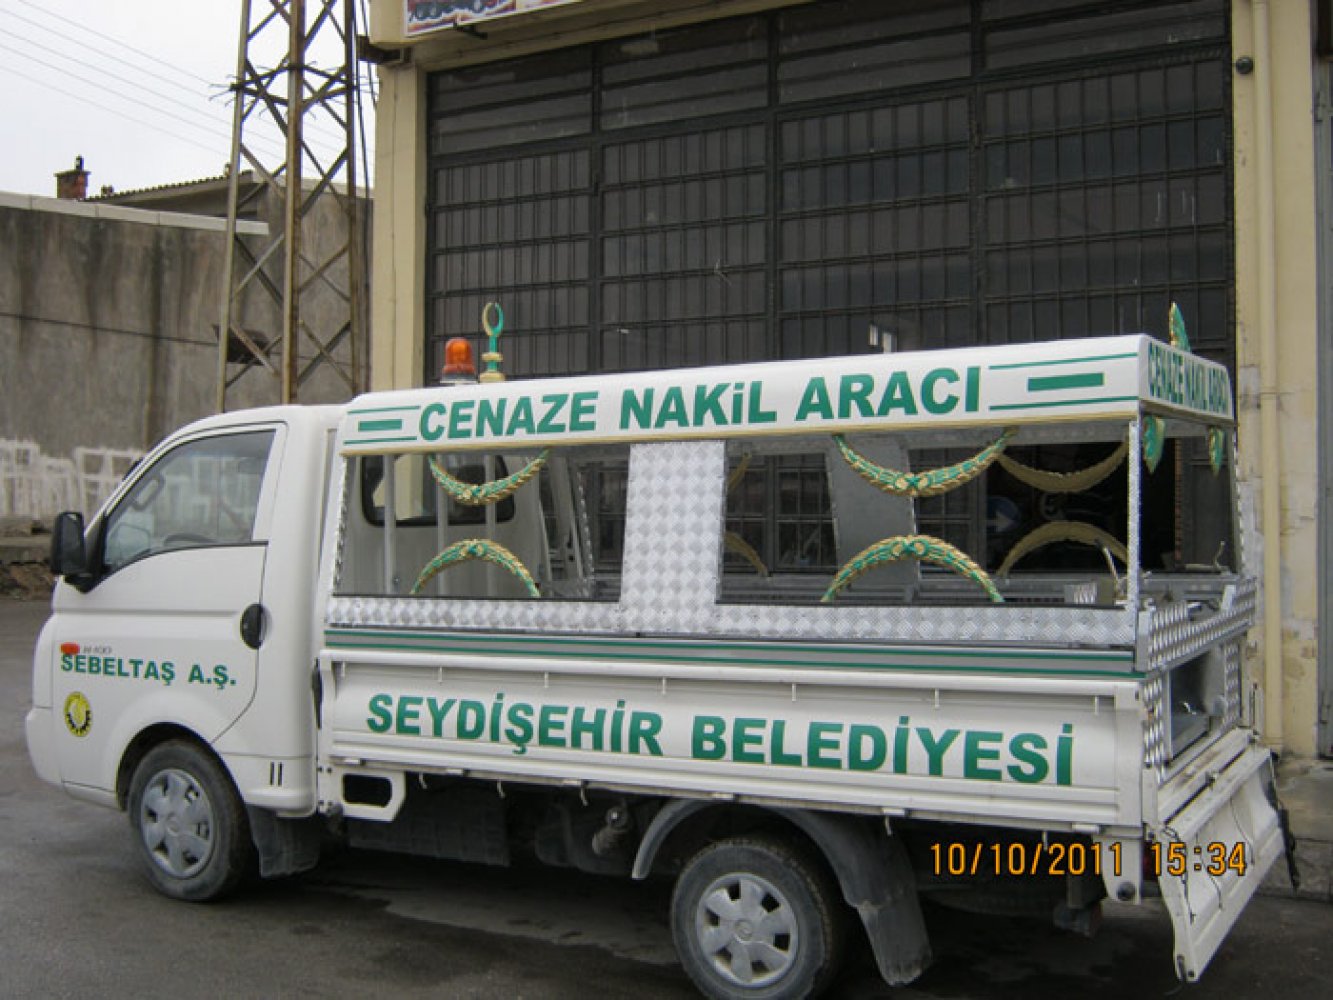 Seydişehir Belediyesi Cenaze Nakil Aracı